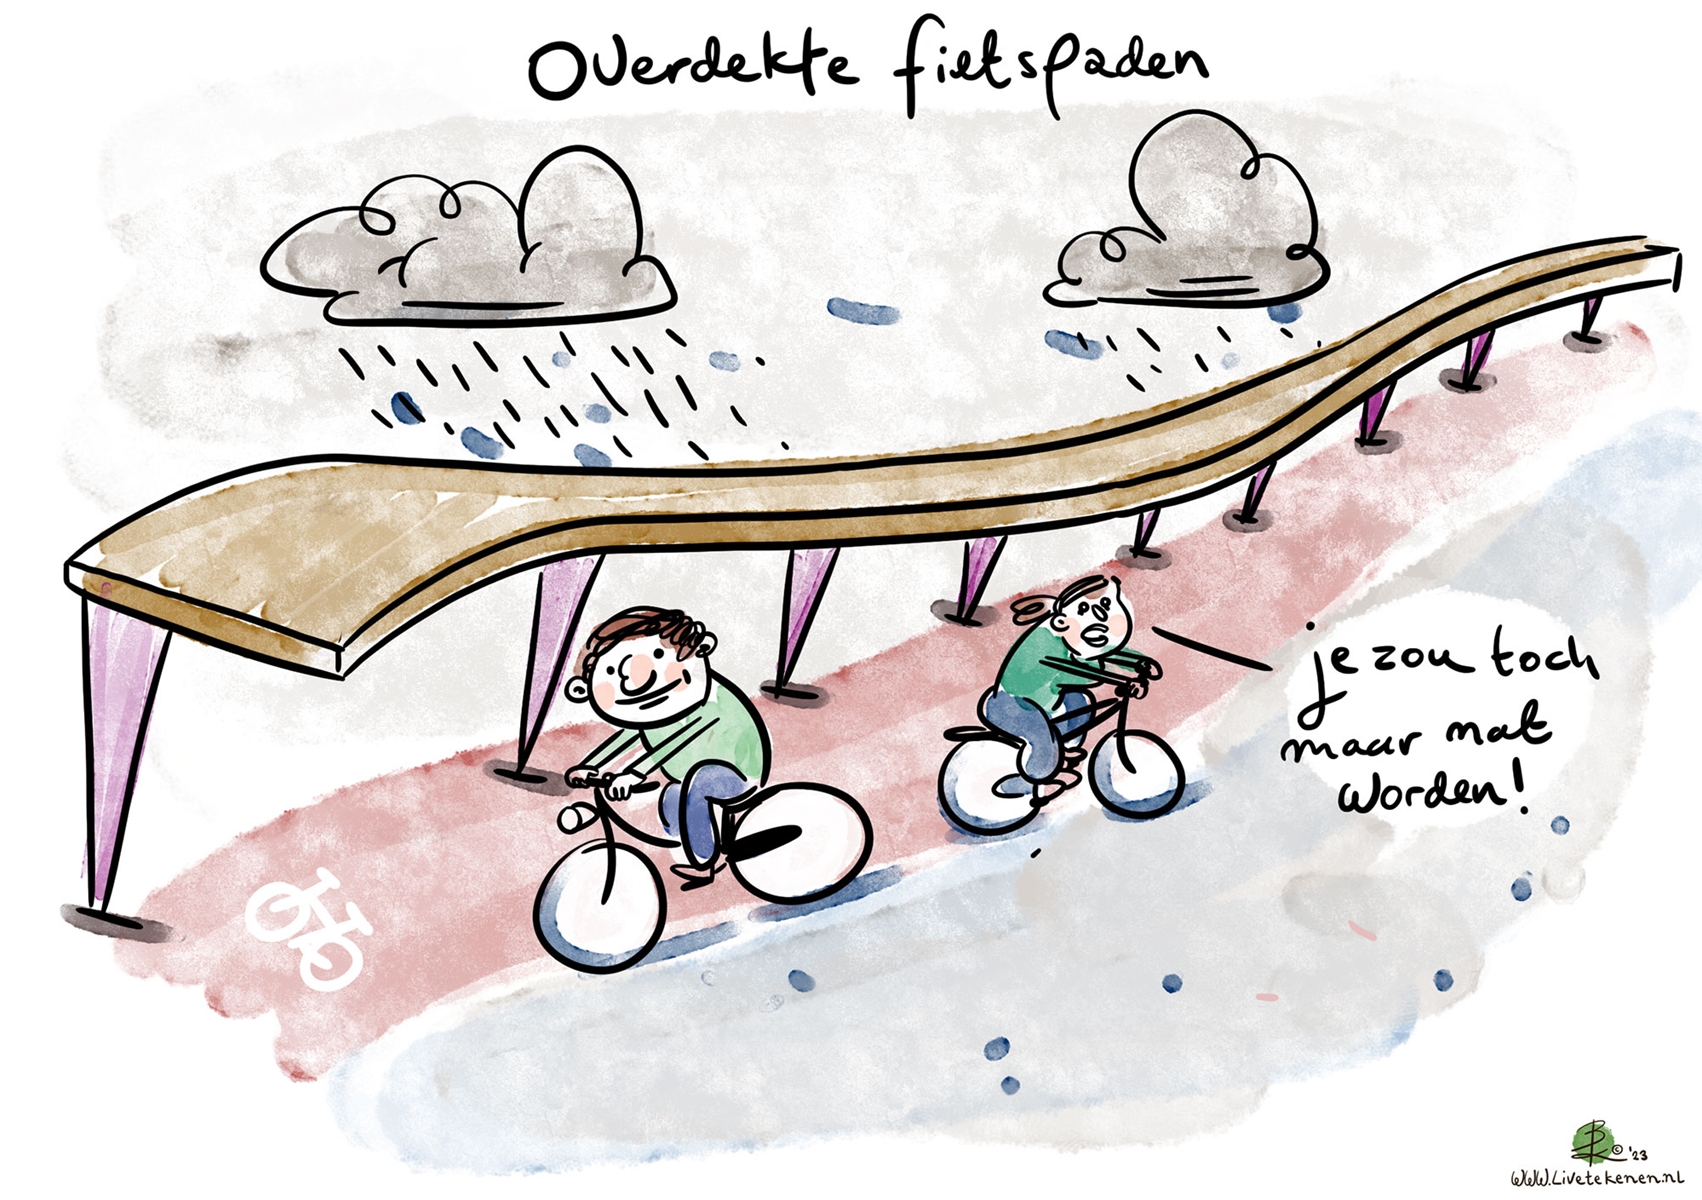 Cartoon met de tekst 'Overdekte fietspaden' 'Je zou toch maar nat worden'